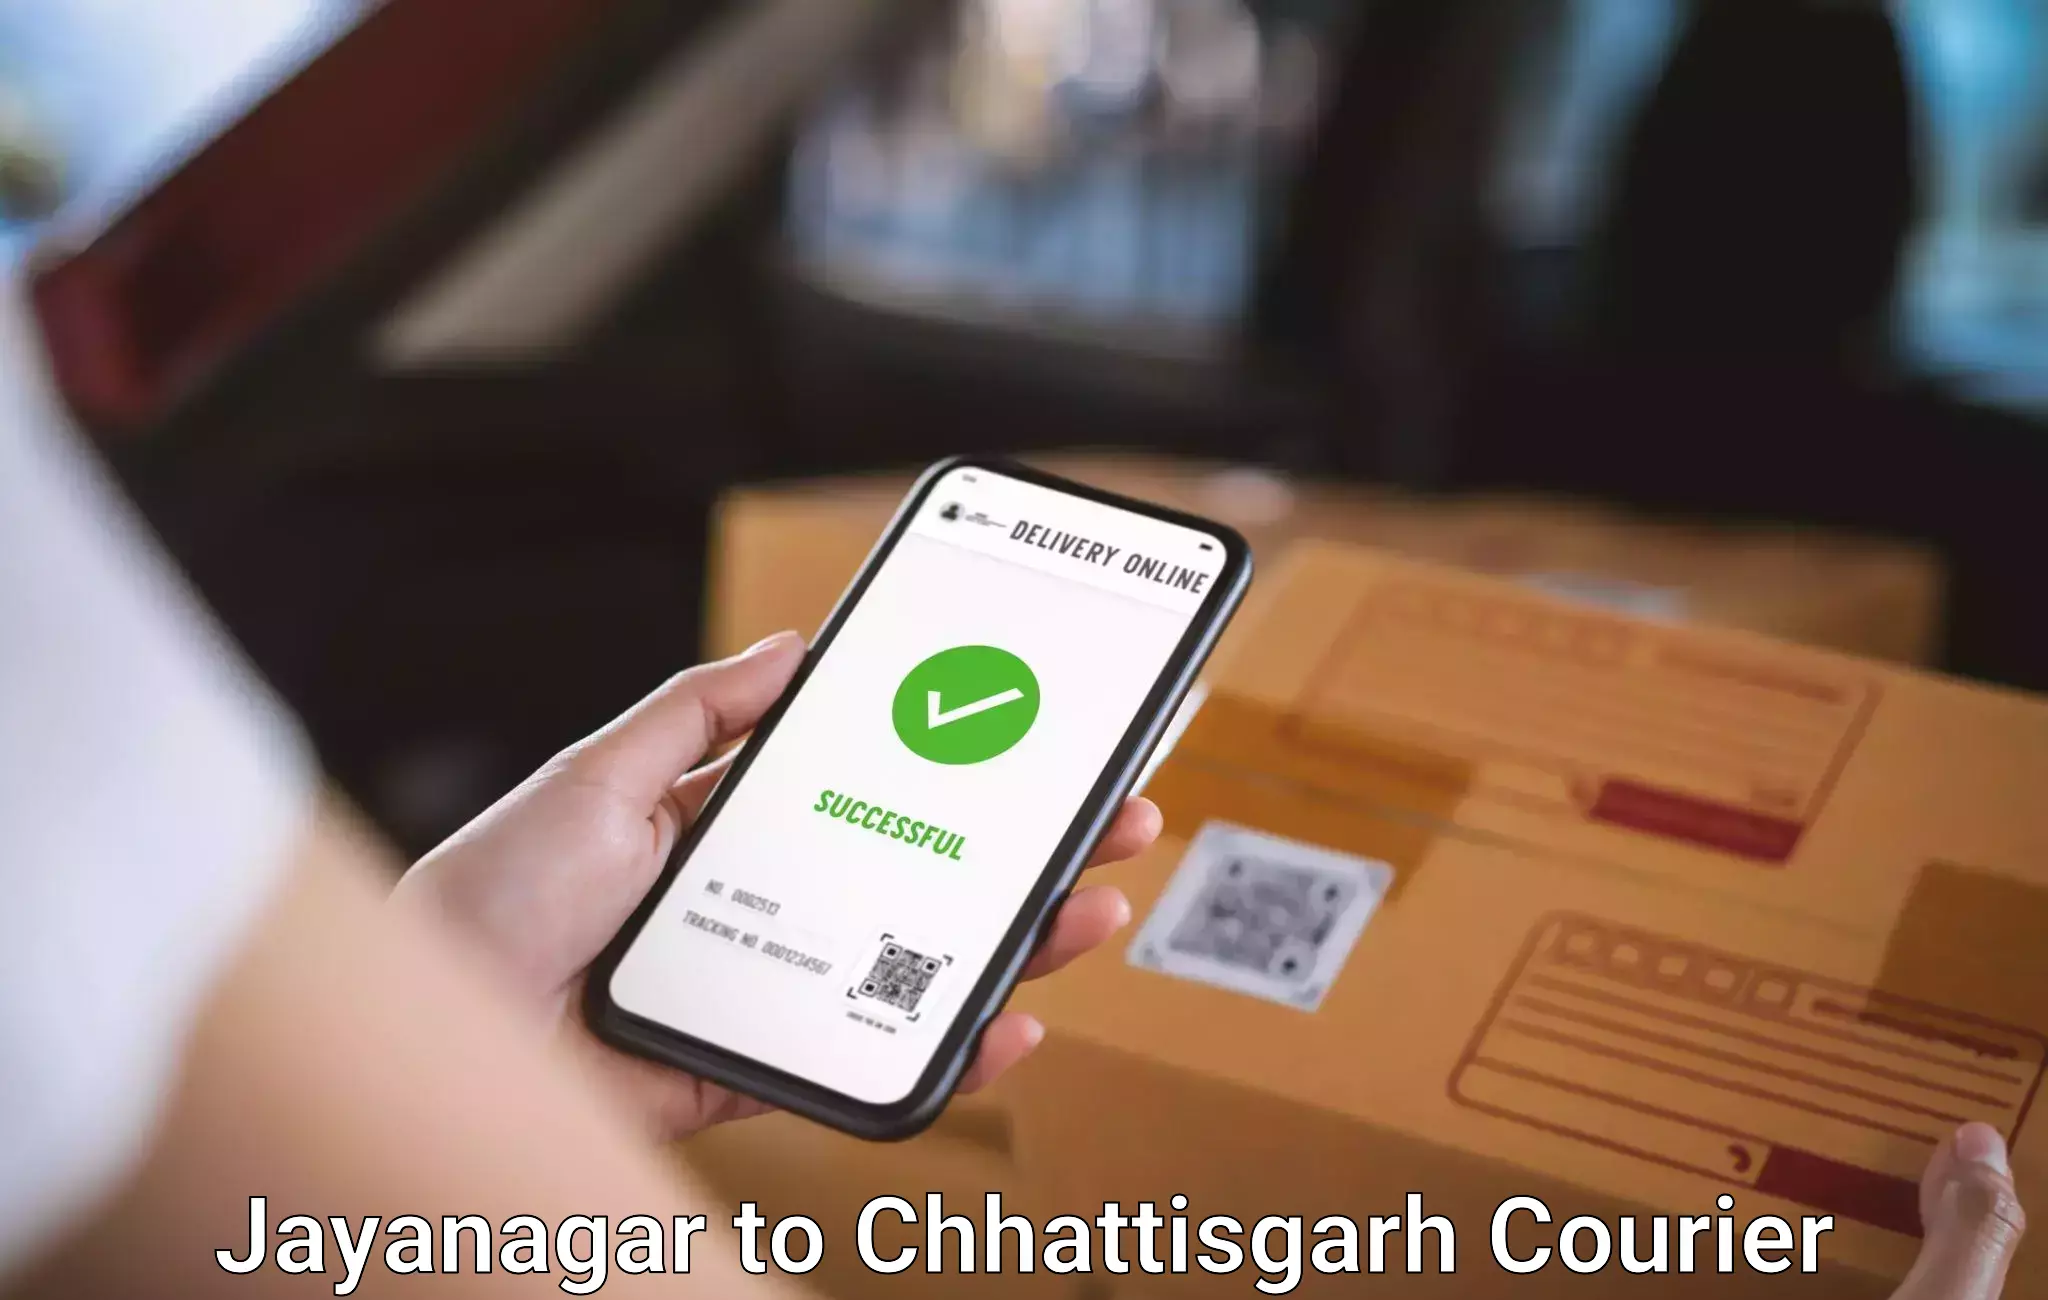 Baggage courier solutions Jayanagar to Bijapur Chhattisgarh